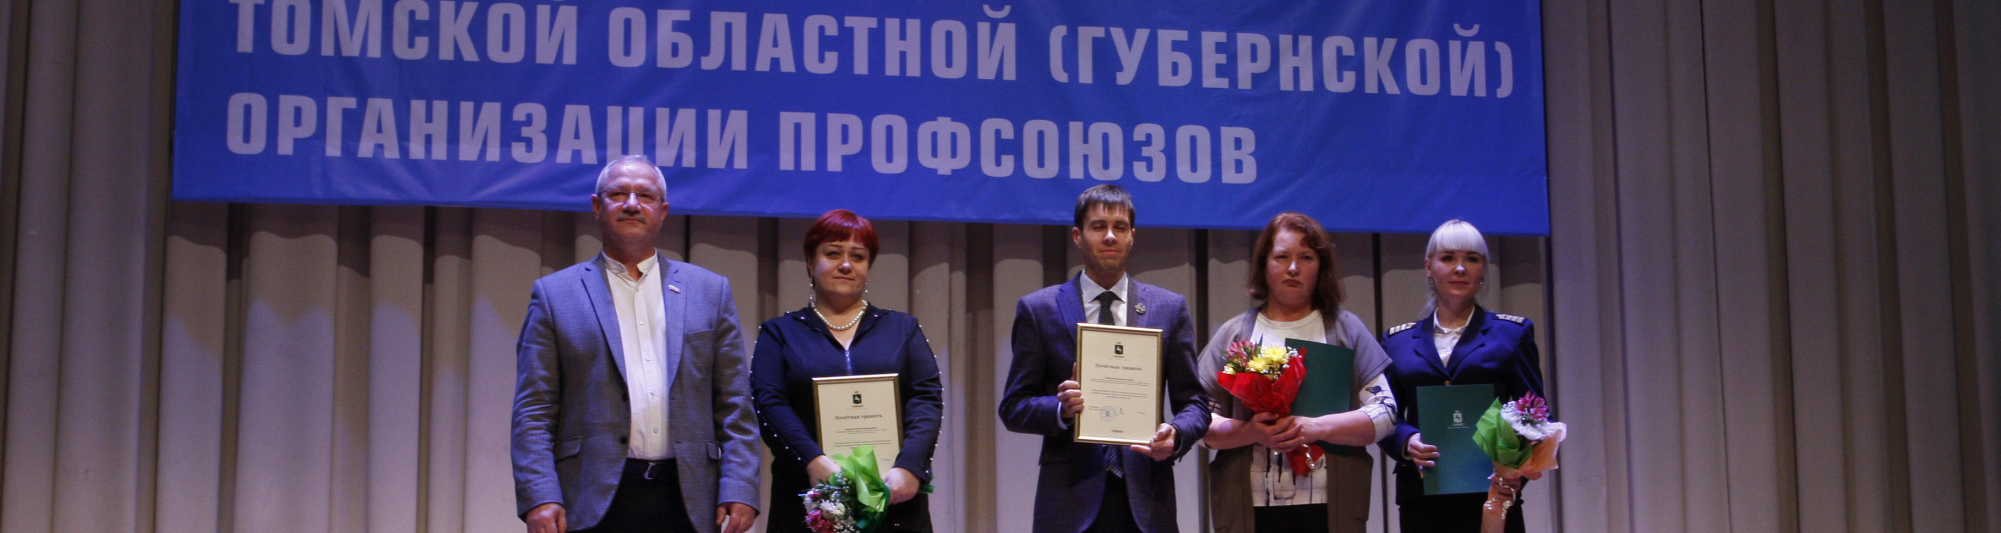 Алексей Балановский поздравил областную организацию профсоюзов со 100-летием